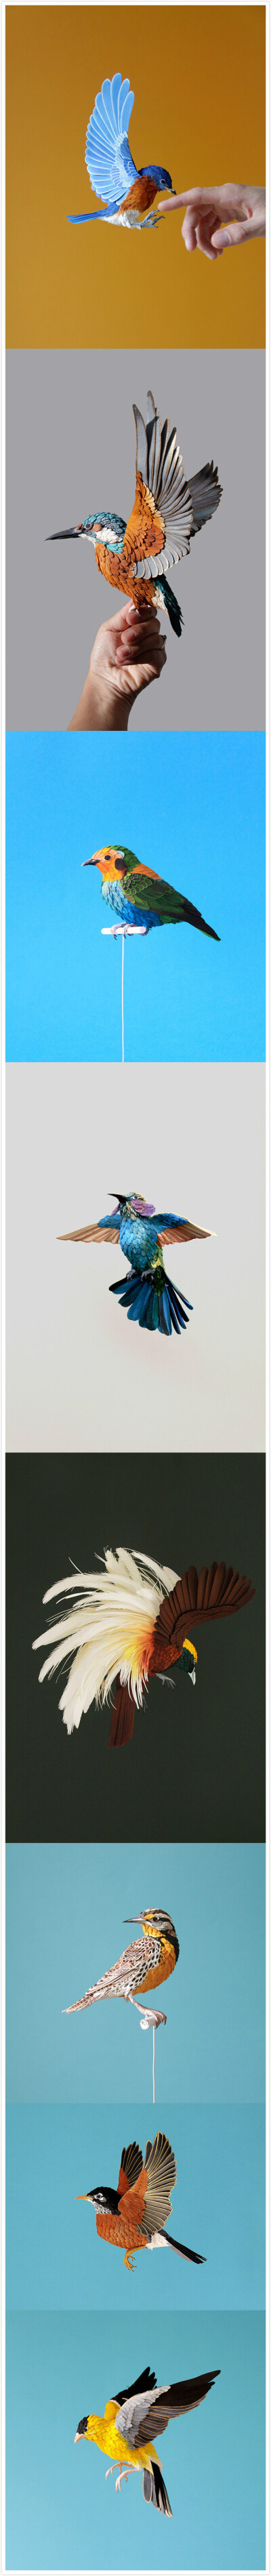 【纸艺】Diana Beltrán Herrera，哥伦比亚女艺术家，出生于1987年，官方网站：http://t.cn/zYo8FaC 她的纸艺作品大多是鸟类，制作细腻逼真，色彩丰富绚丽。